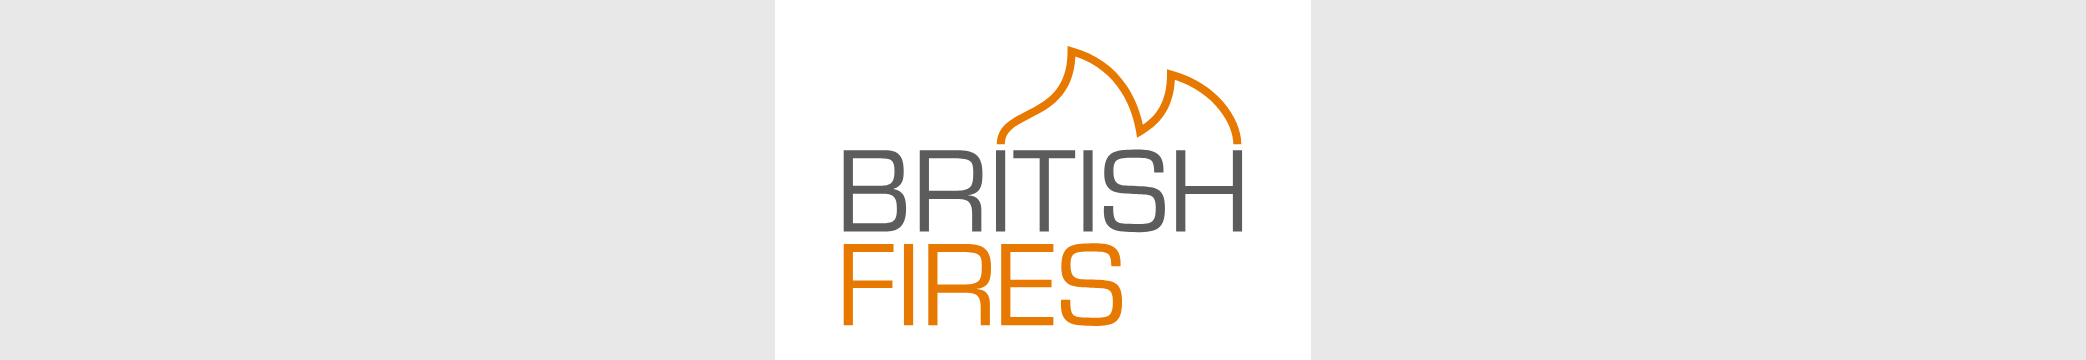 Header_britisch fires